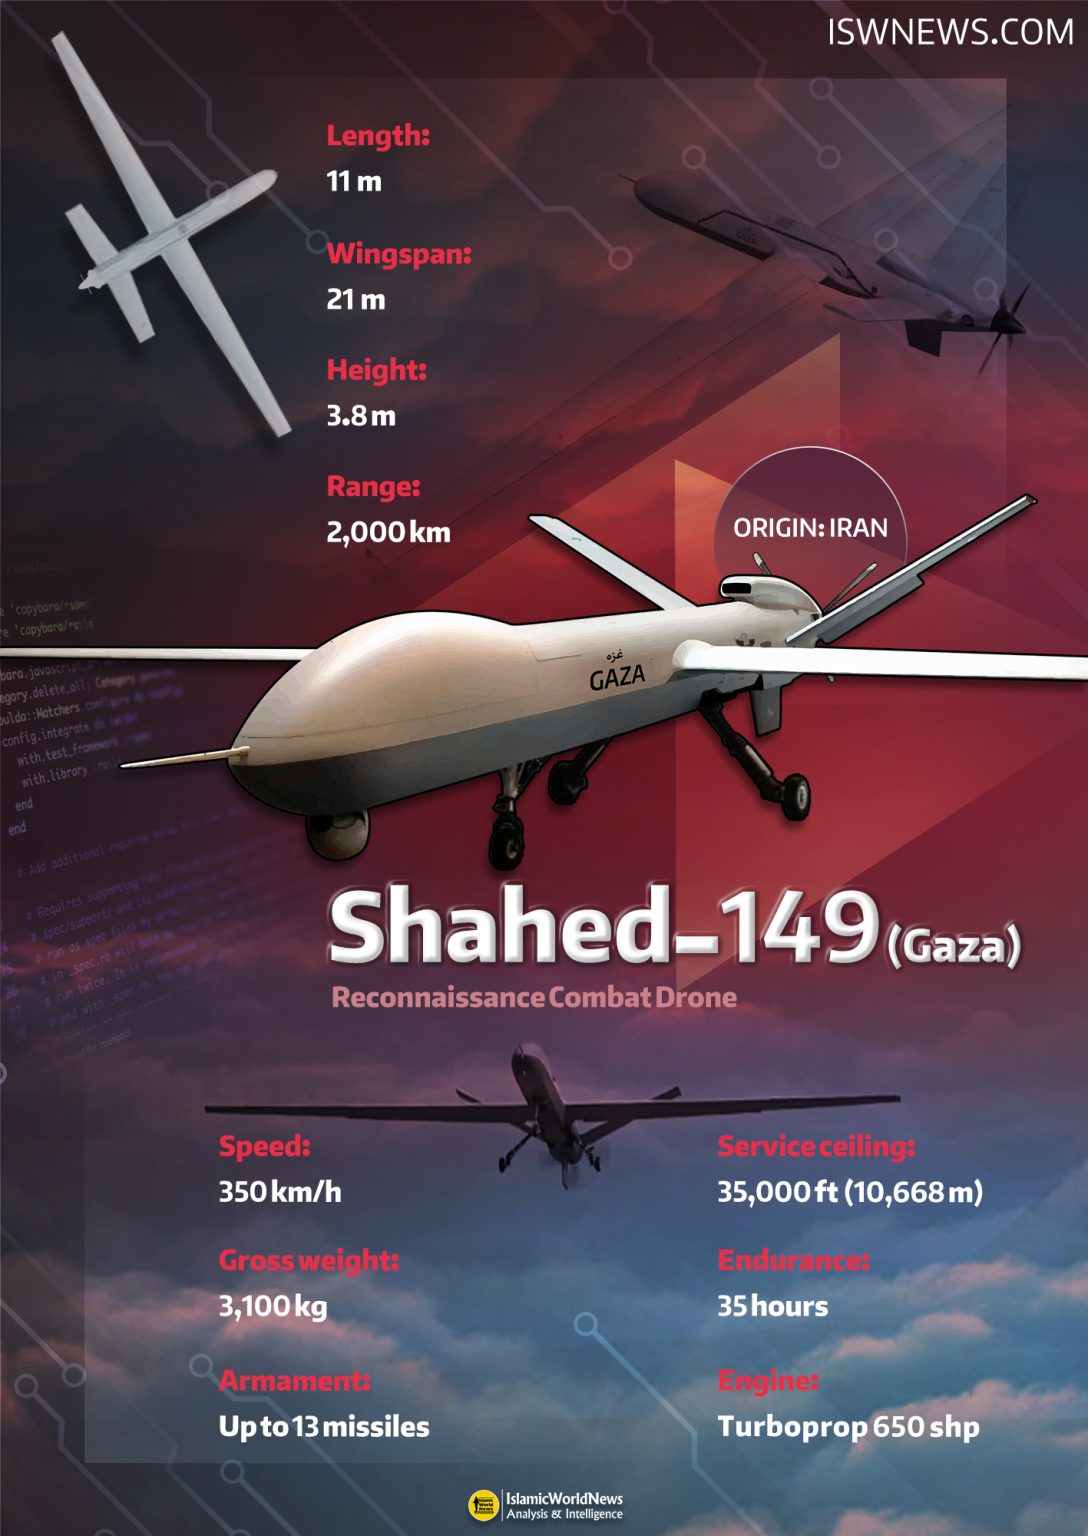 Shahed-149-Gaza-drone-EN-1088x1536.jpg